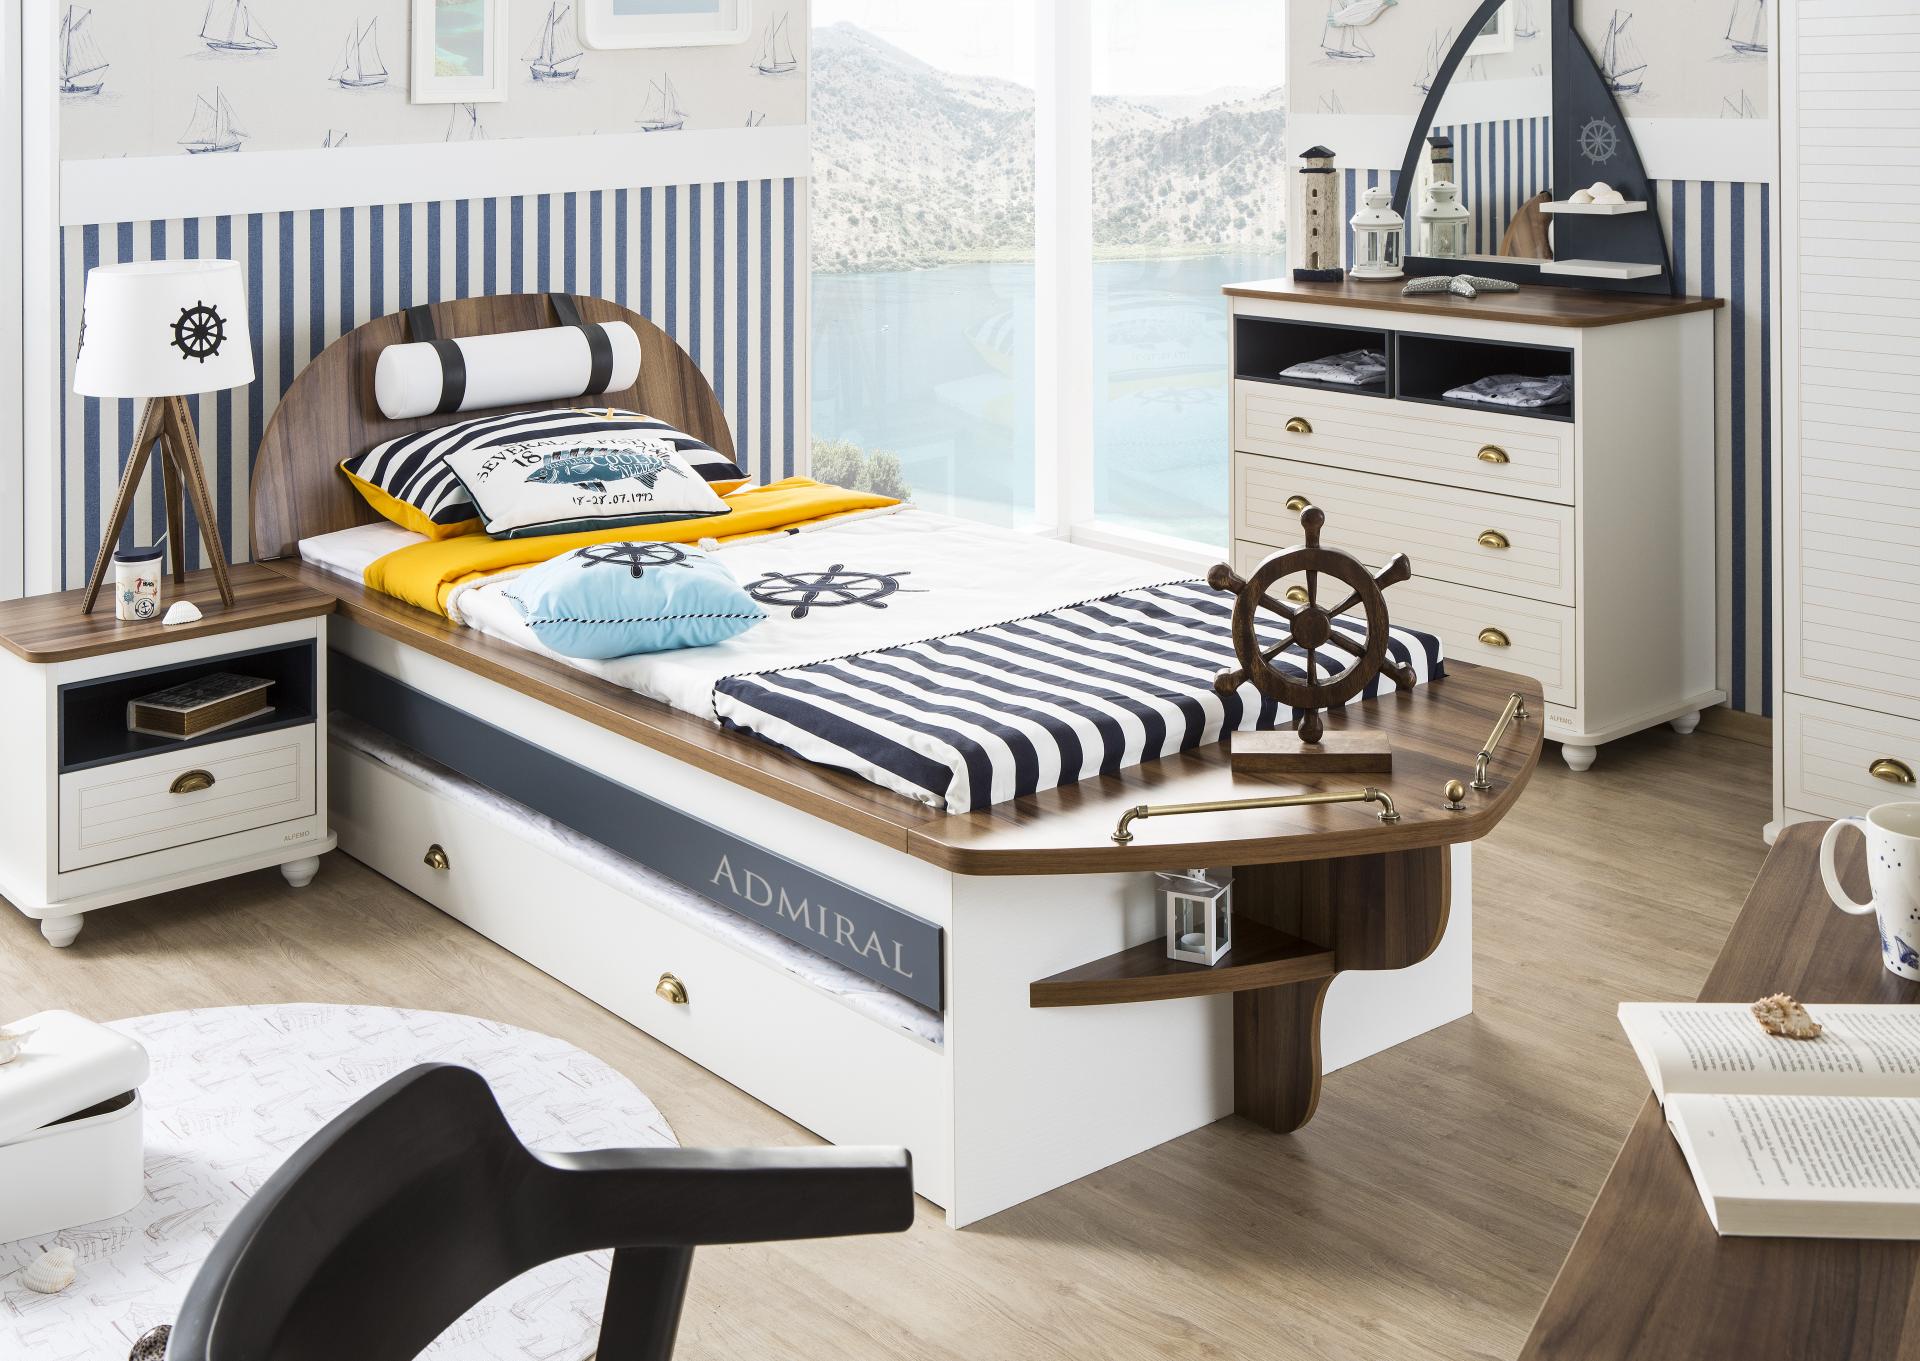 Admiral Boat Bedstead Bedroom Set,AlfoMack